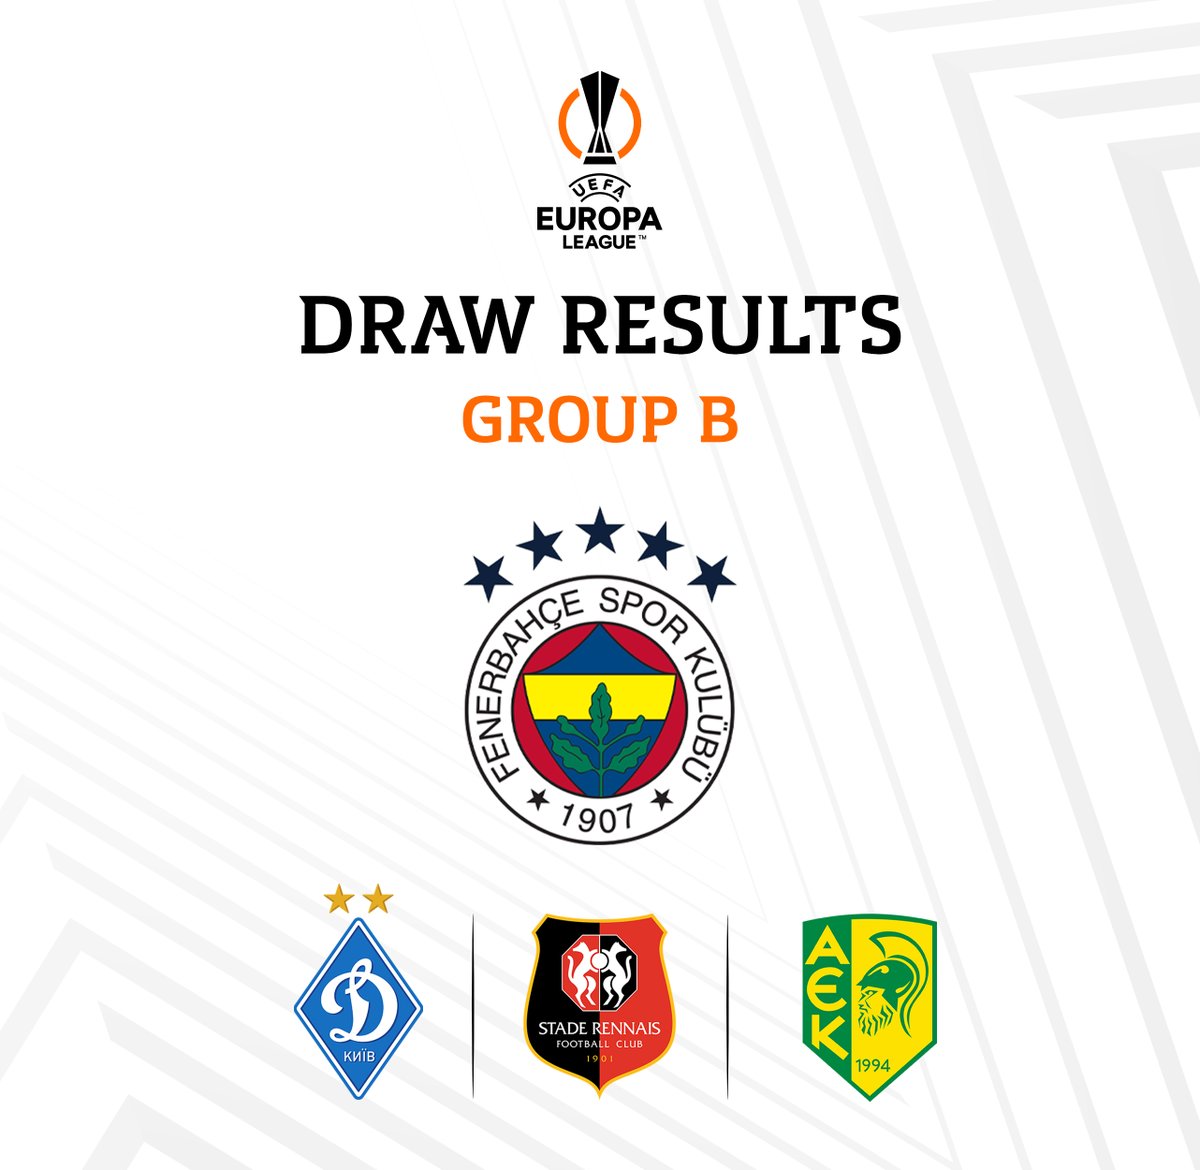 🏆 UEFA Avrupa Ligi B Grubu'nda mücadele edeceğiz.

- Dinamo Kiev 
- Rennes
- AEK Larnaca

#UEL